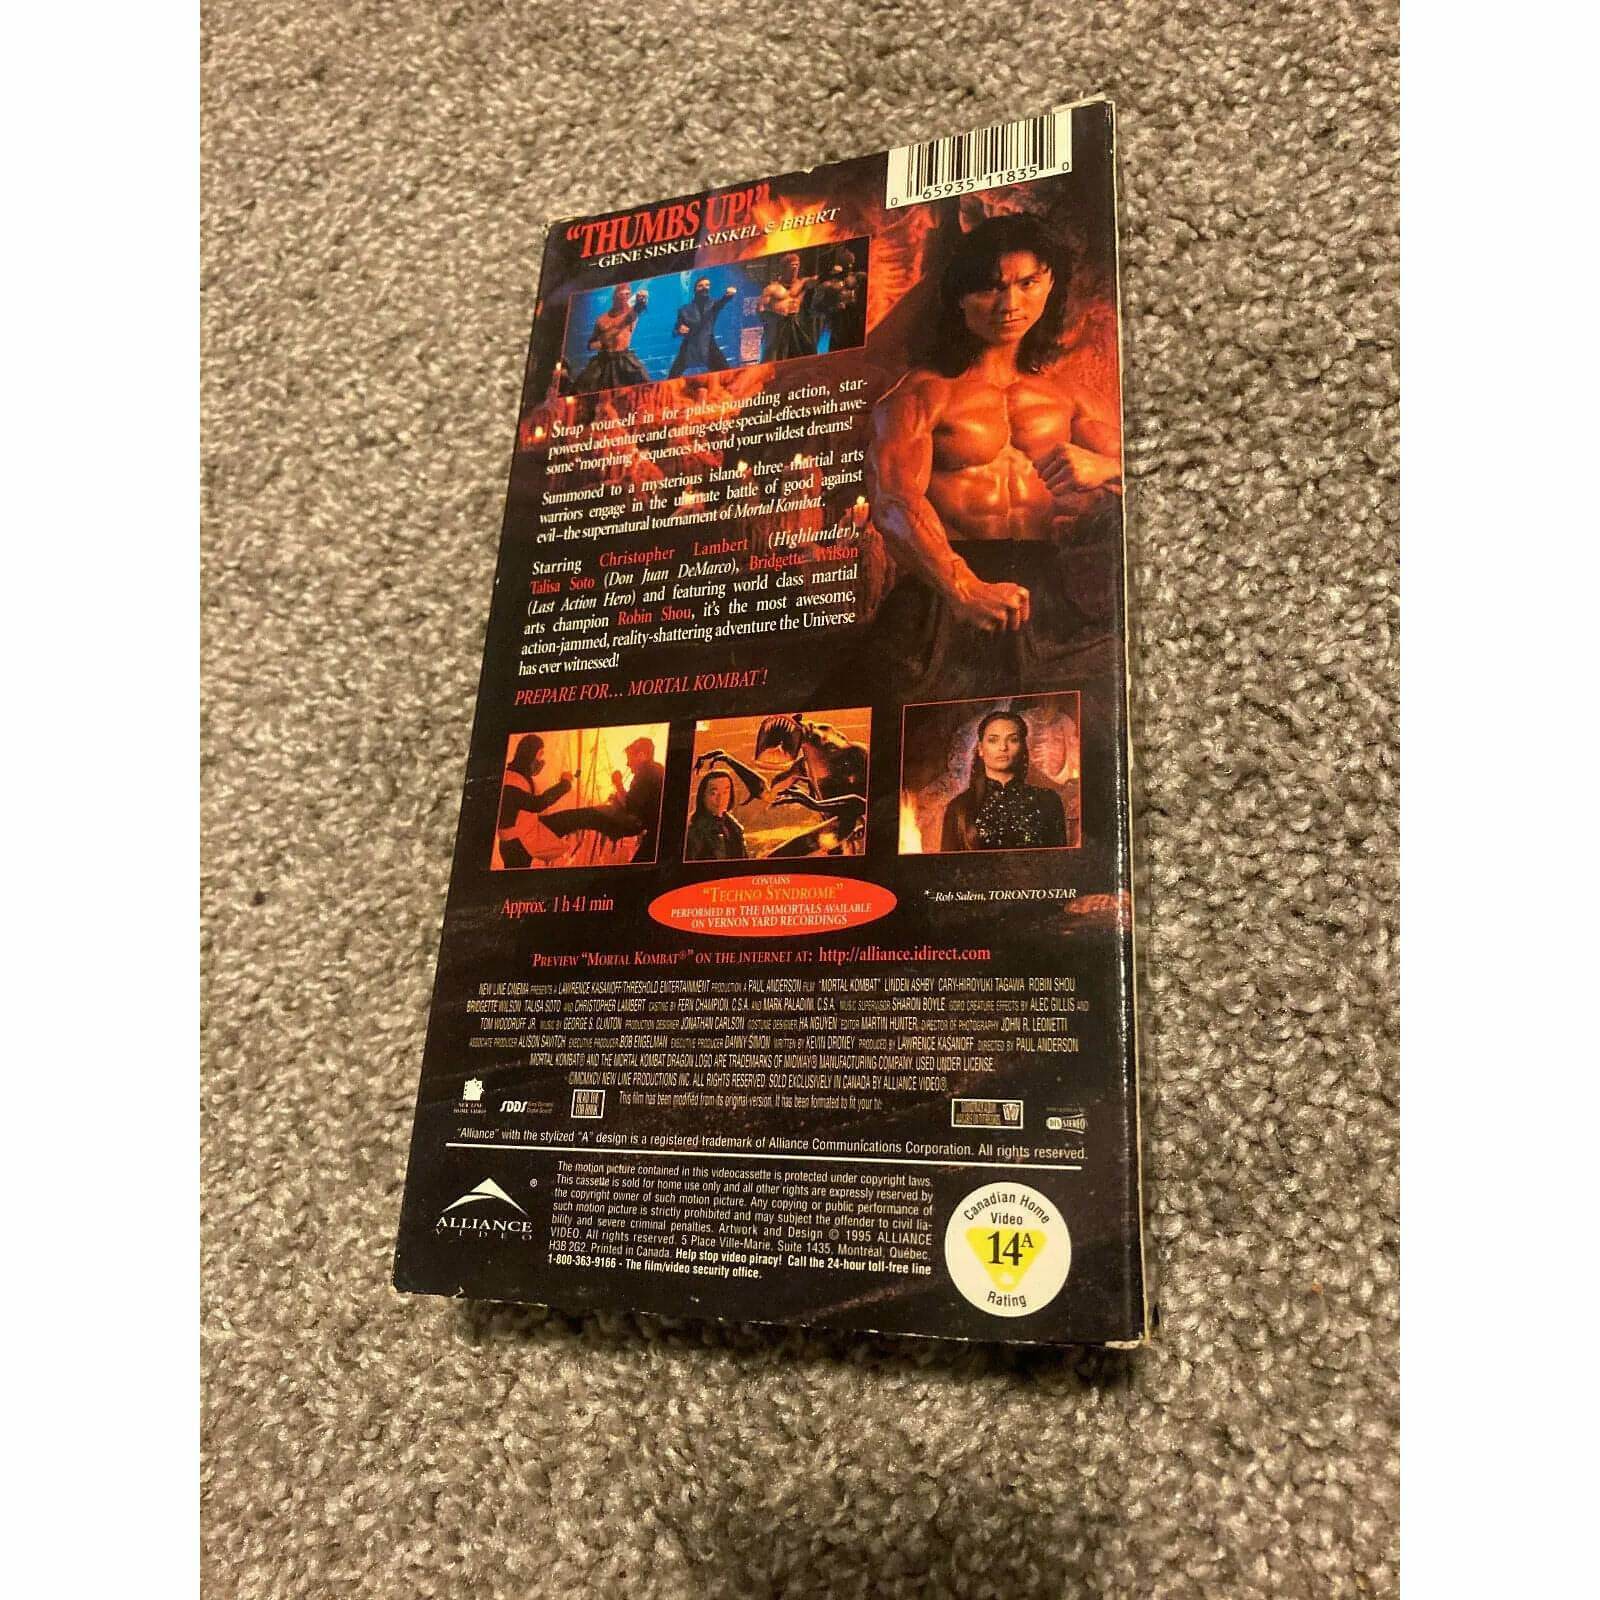 Mortal Kombat (VHS TAPES FOR SALE, 1995)